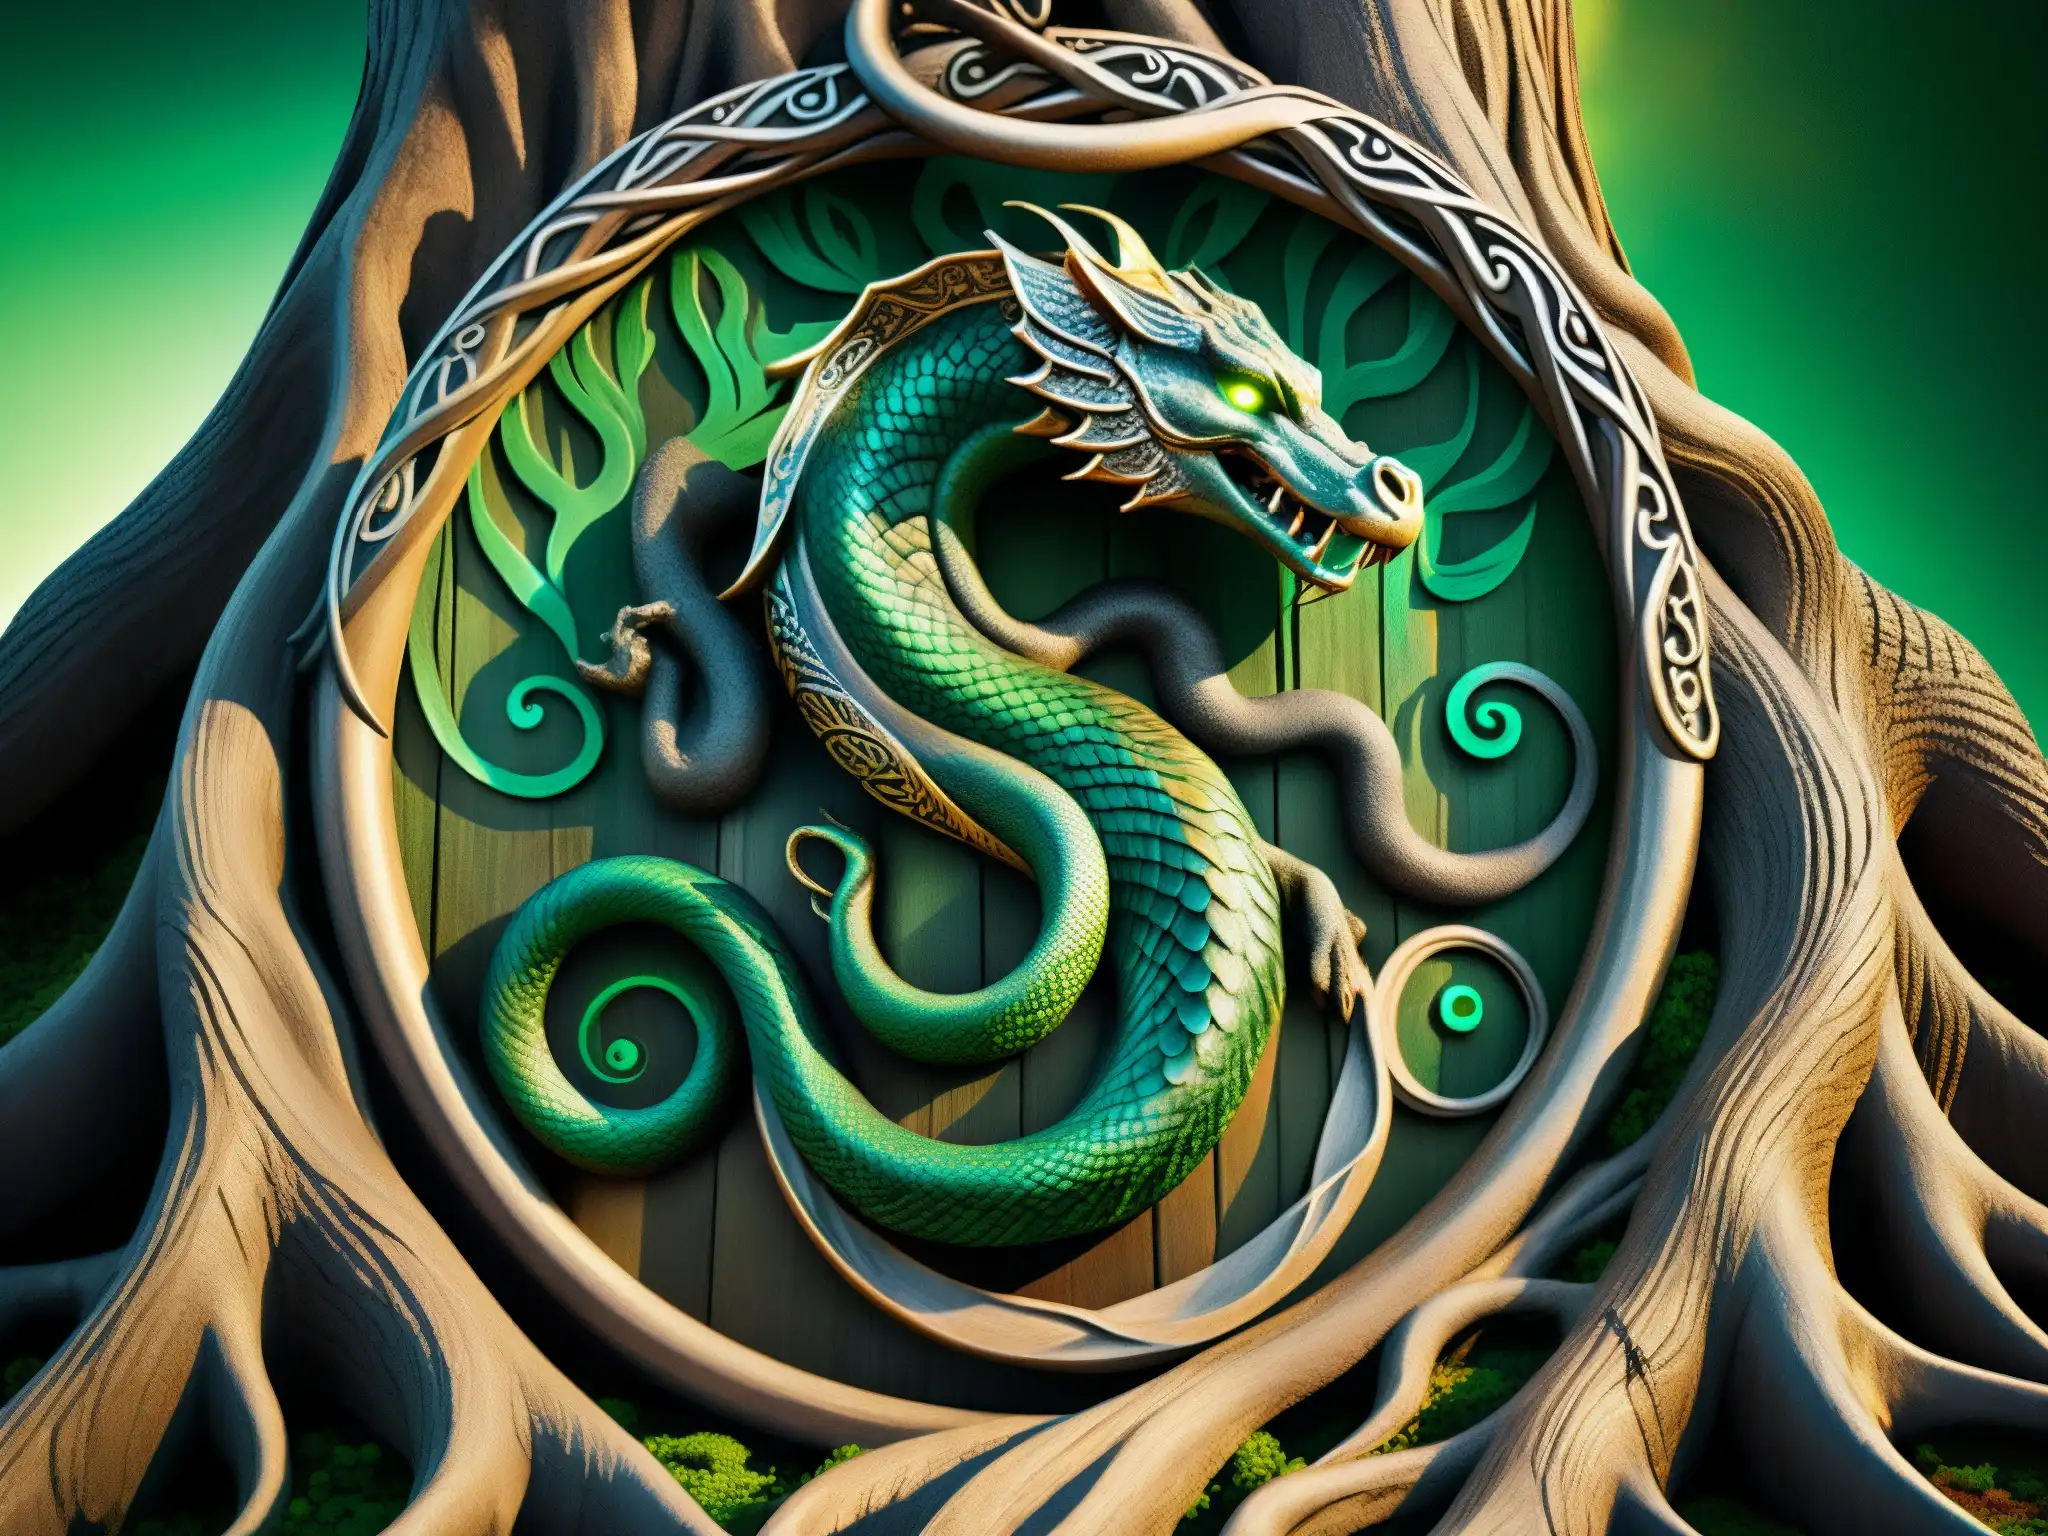 La leyenda de la Serpiente de Midgard: Jörmungandr, la serpiente, enroscada alrededor de Yggdrasil, el árbol del mundo, con escamas brillantes y ojos de esmeralda, creando una atmósfera mítica y etérea en Asgard